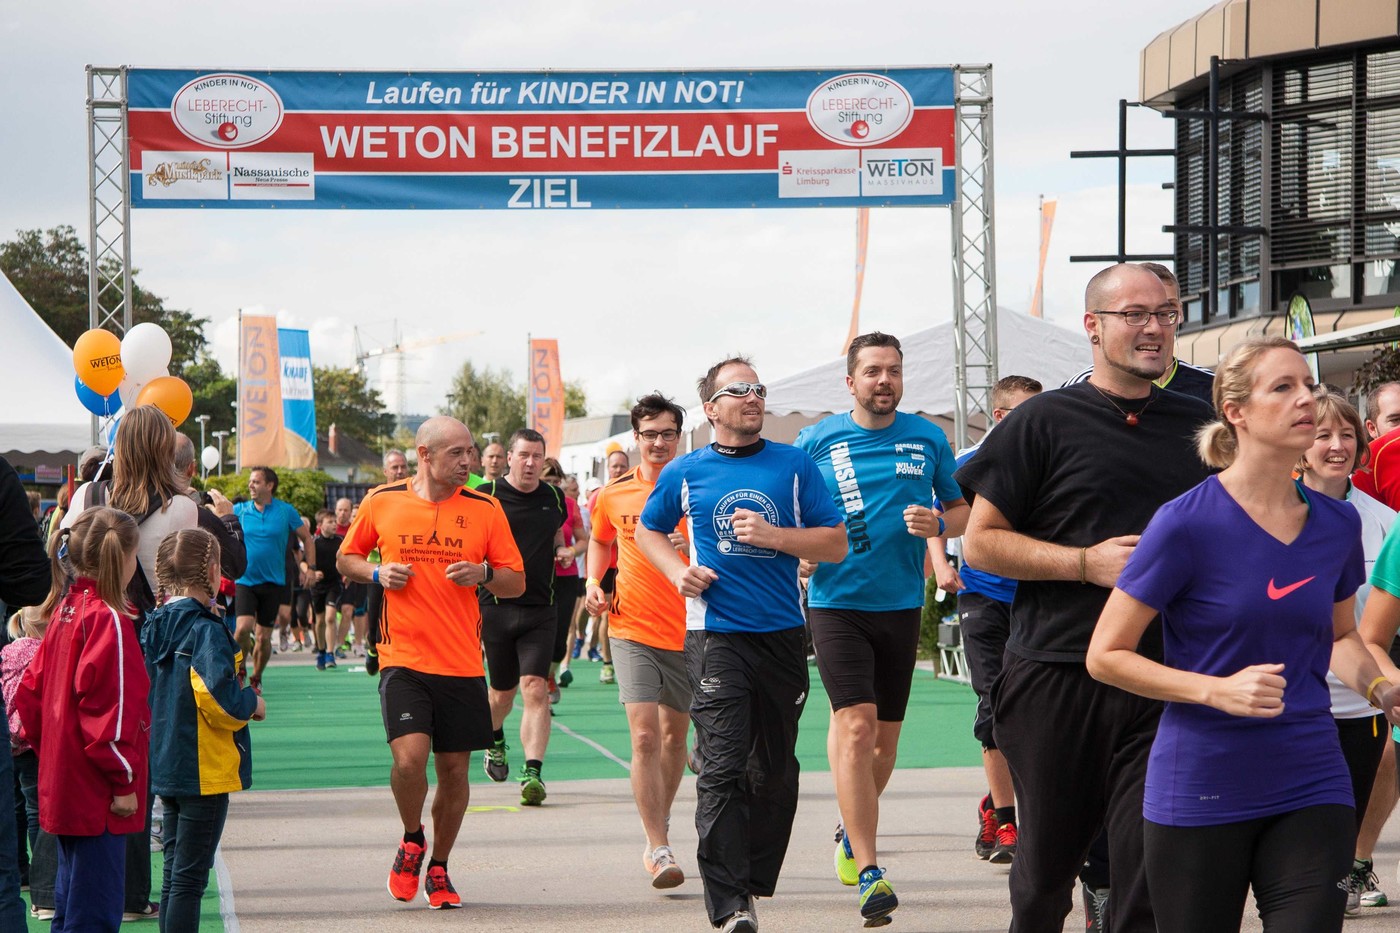 Pro­mi­nen­ter Läu­fer beim Lauf. Rin­ger Alex­an­der Lei­pold mit Son­nen­brille Foto: WETON Gruppe